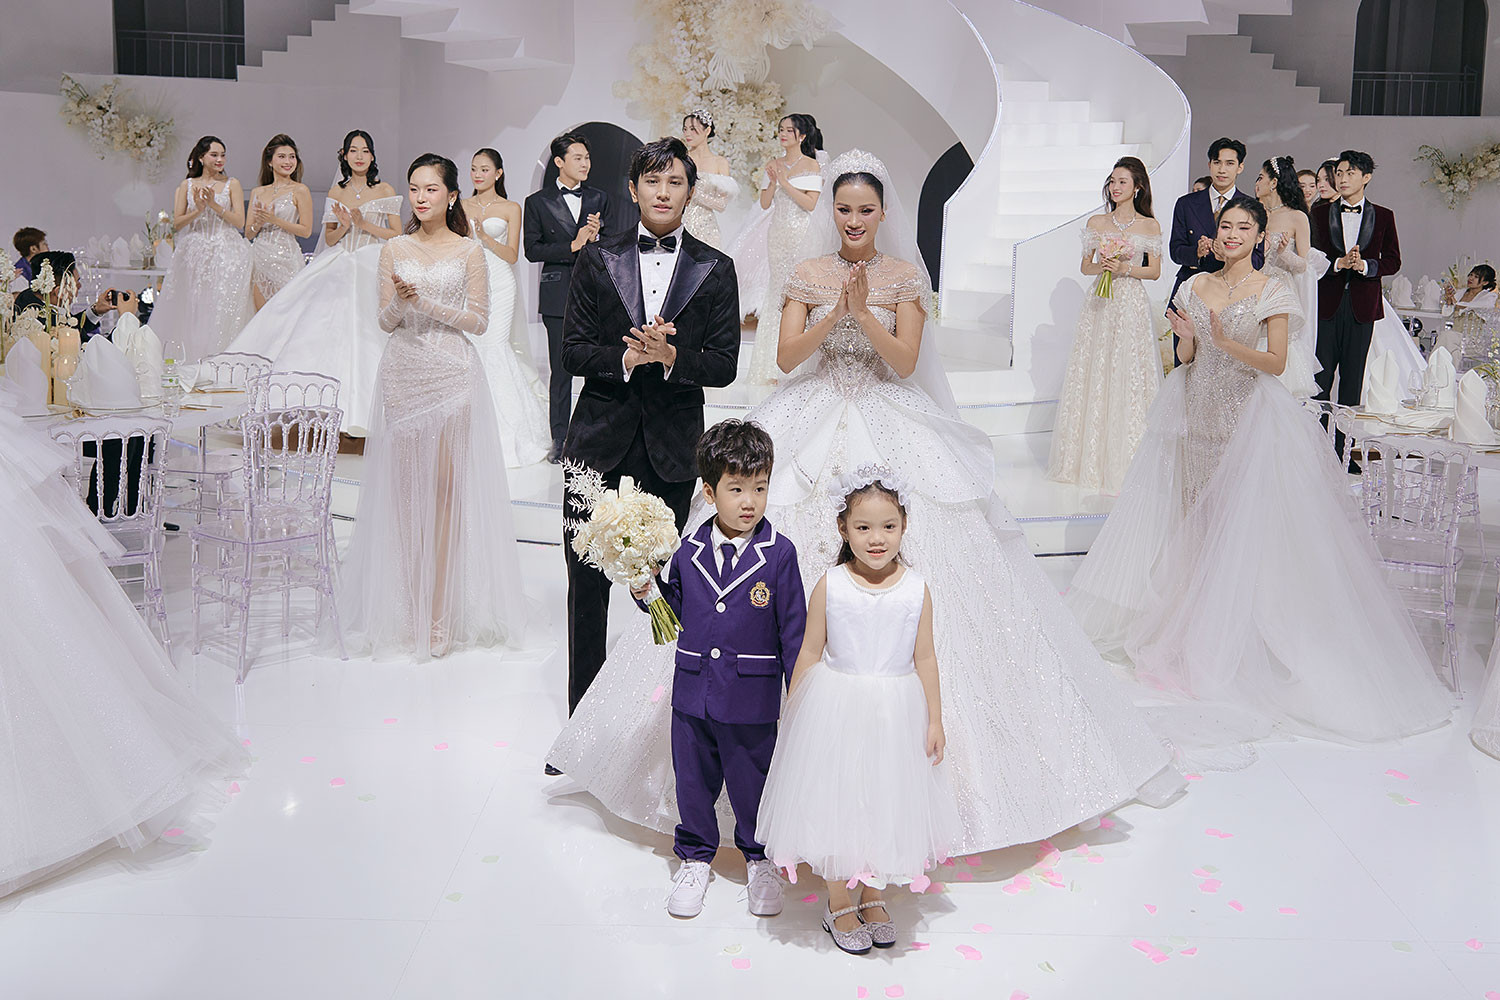 Á hậu Hương Ly tổ chức đám cưới tại sàn diễn thời trang - ảnh 3